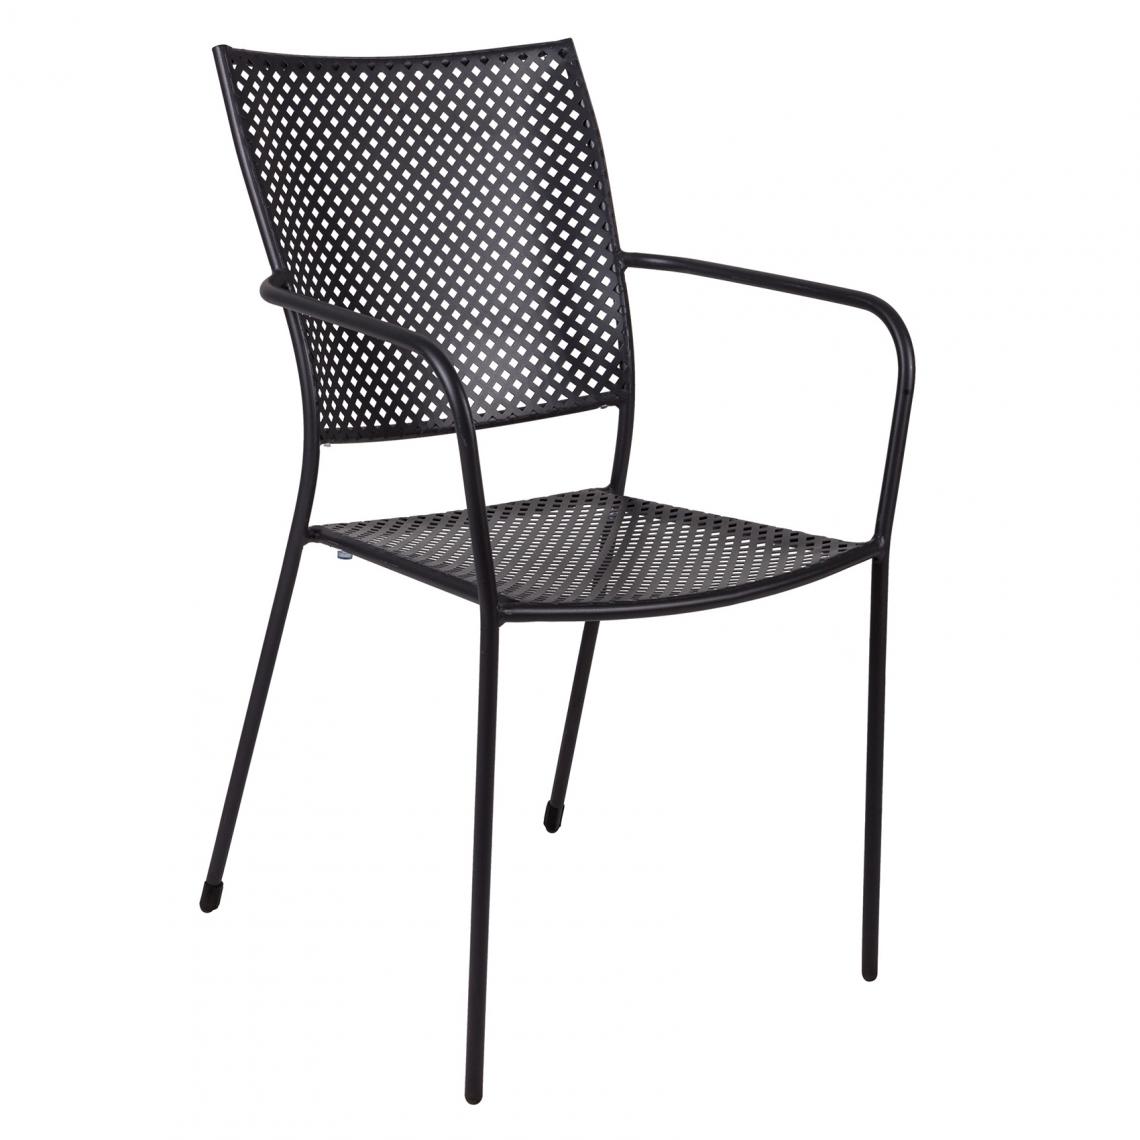 Alter - Chaise empilable en fer avec accoudoirs, couleur noire, 57 x 47 x h89 cm - Chaises